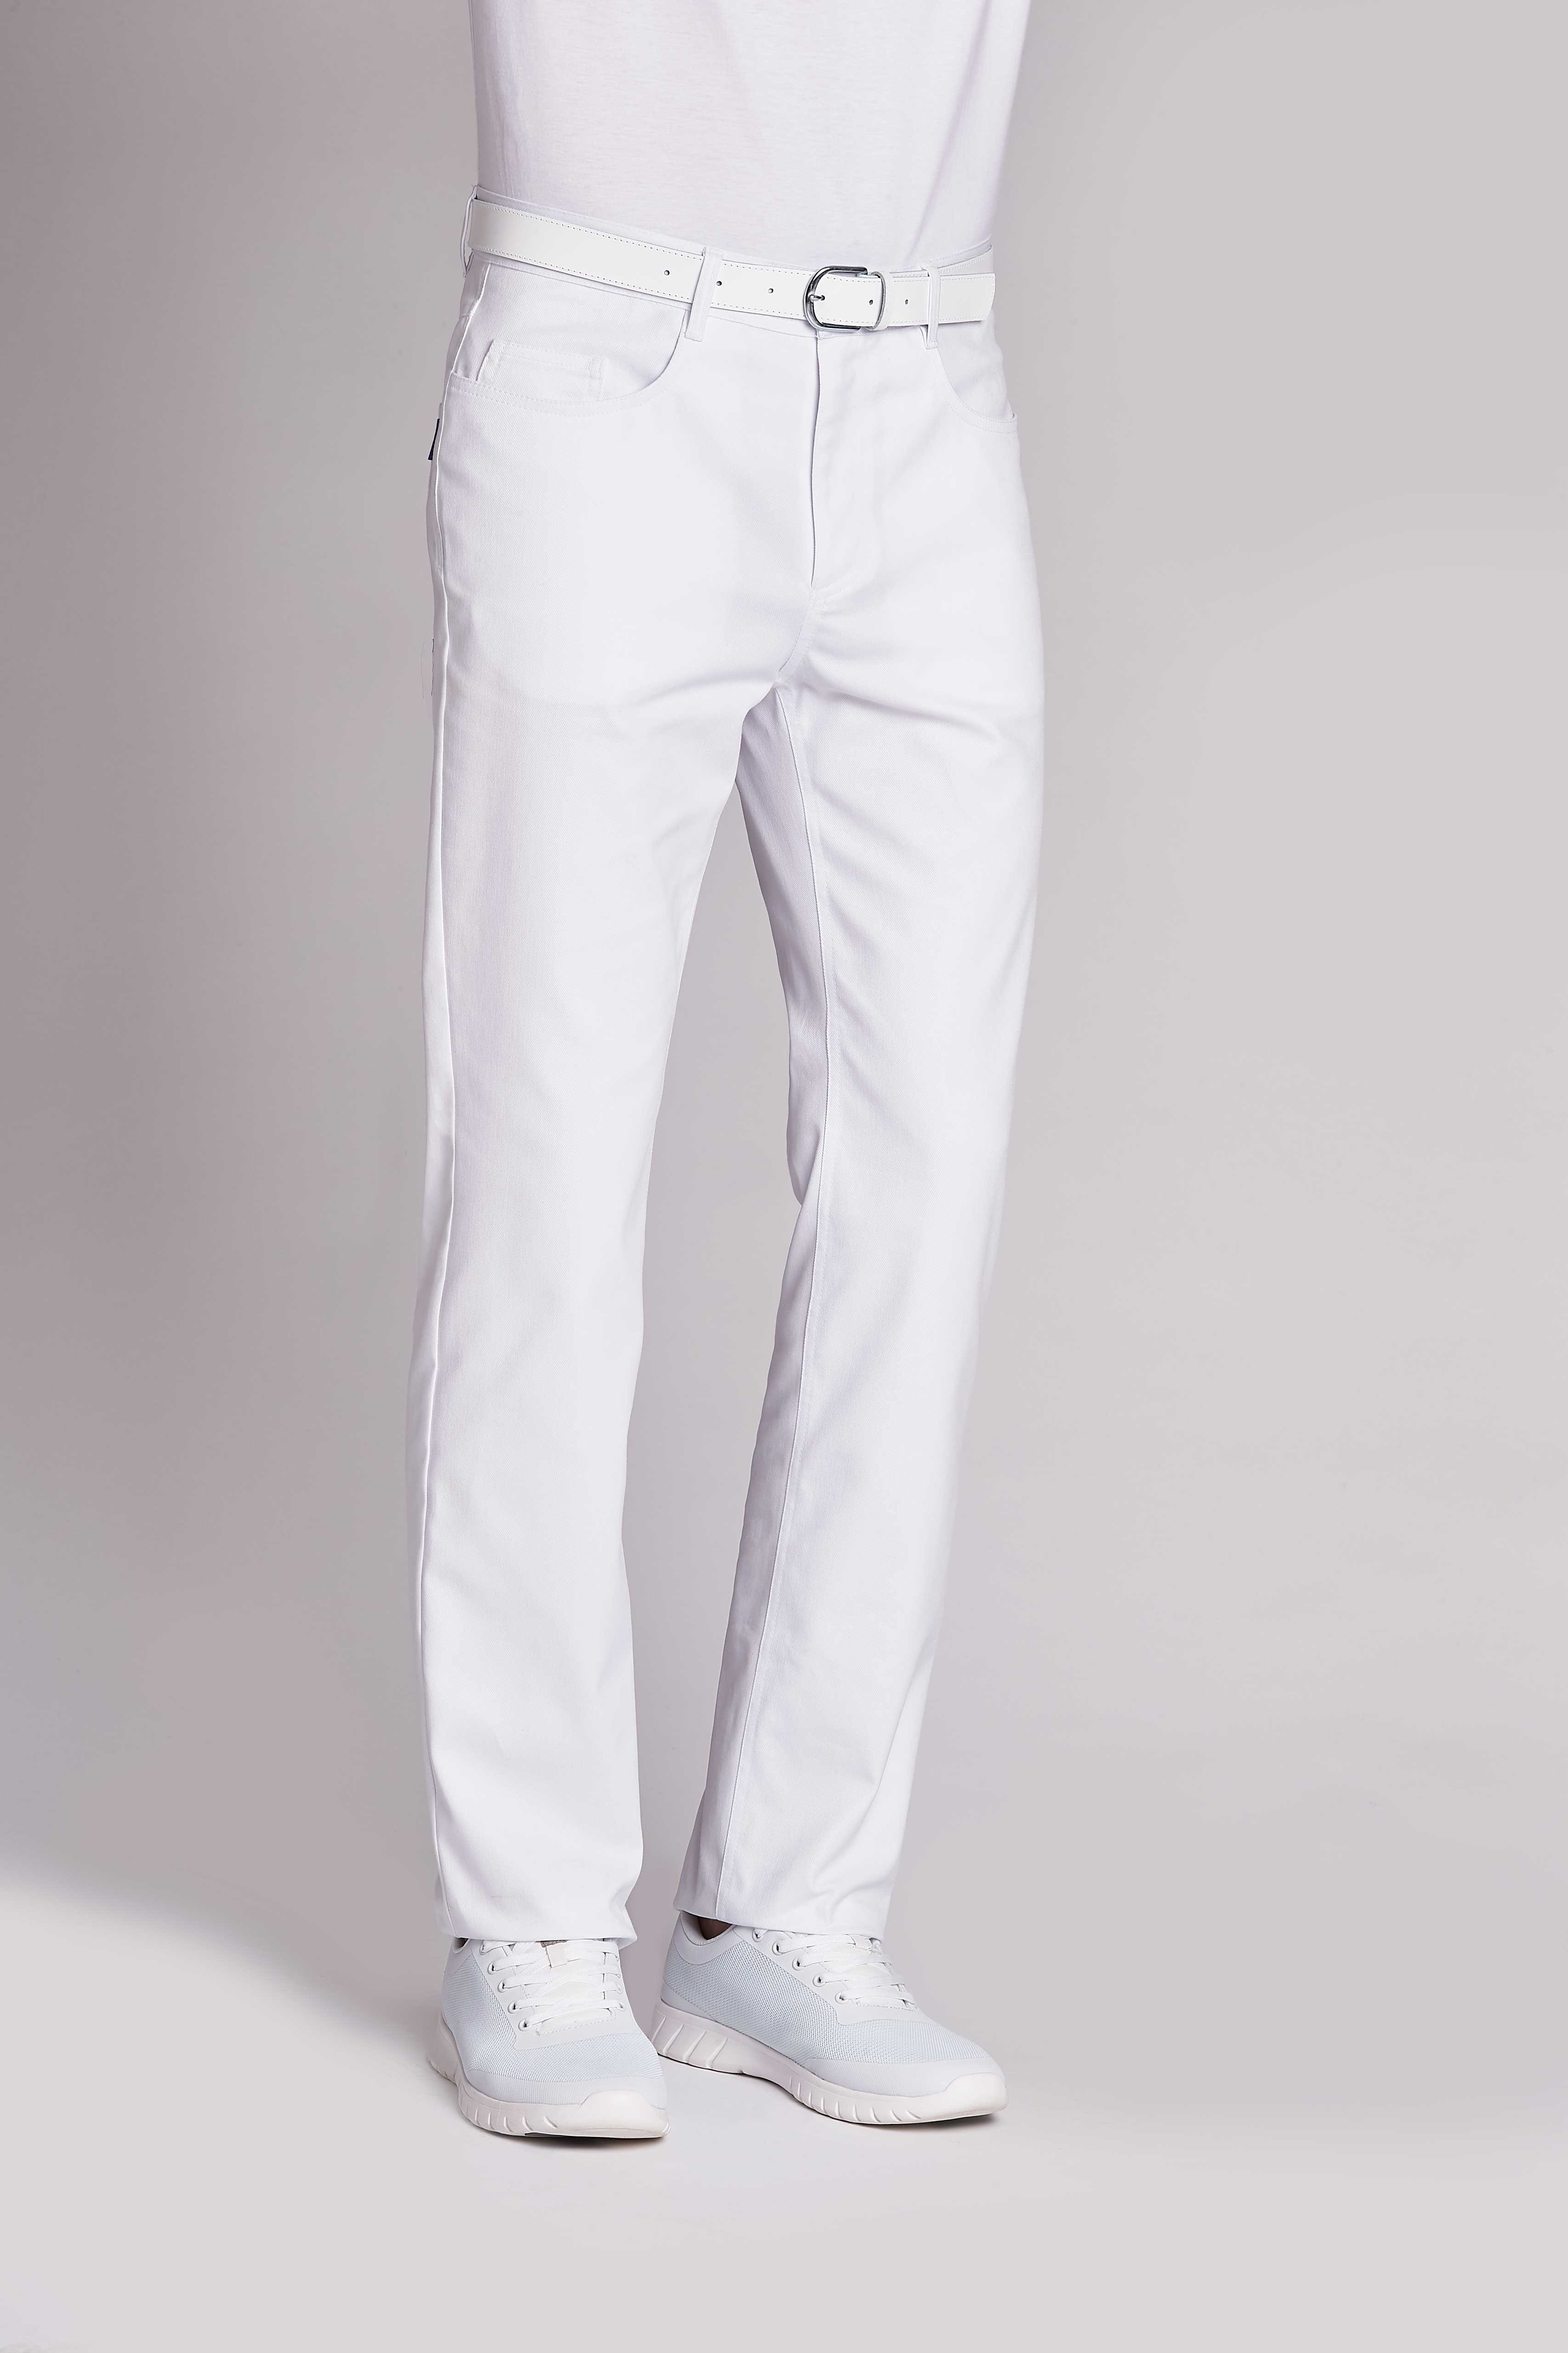 Leiber Arbeitshose Leiber Herren-Jeans 12/8300-2 5-Pocket weiß, Stretch